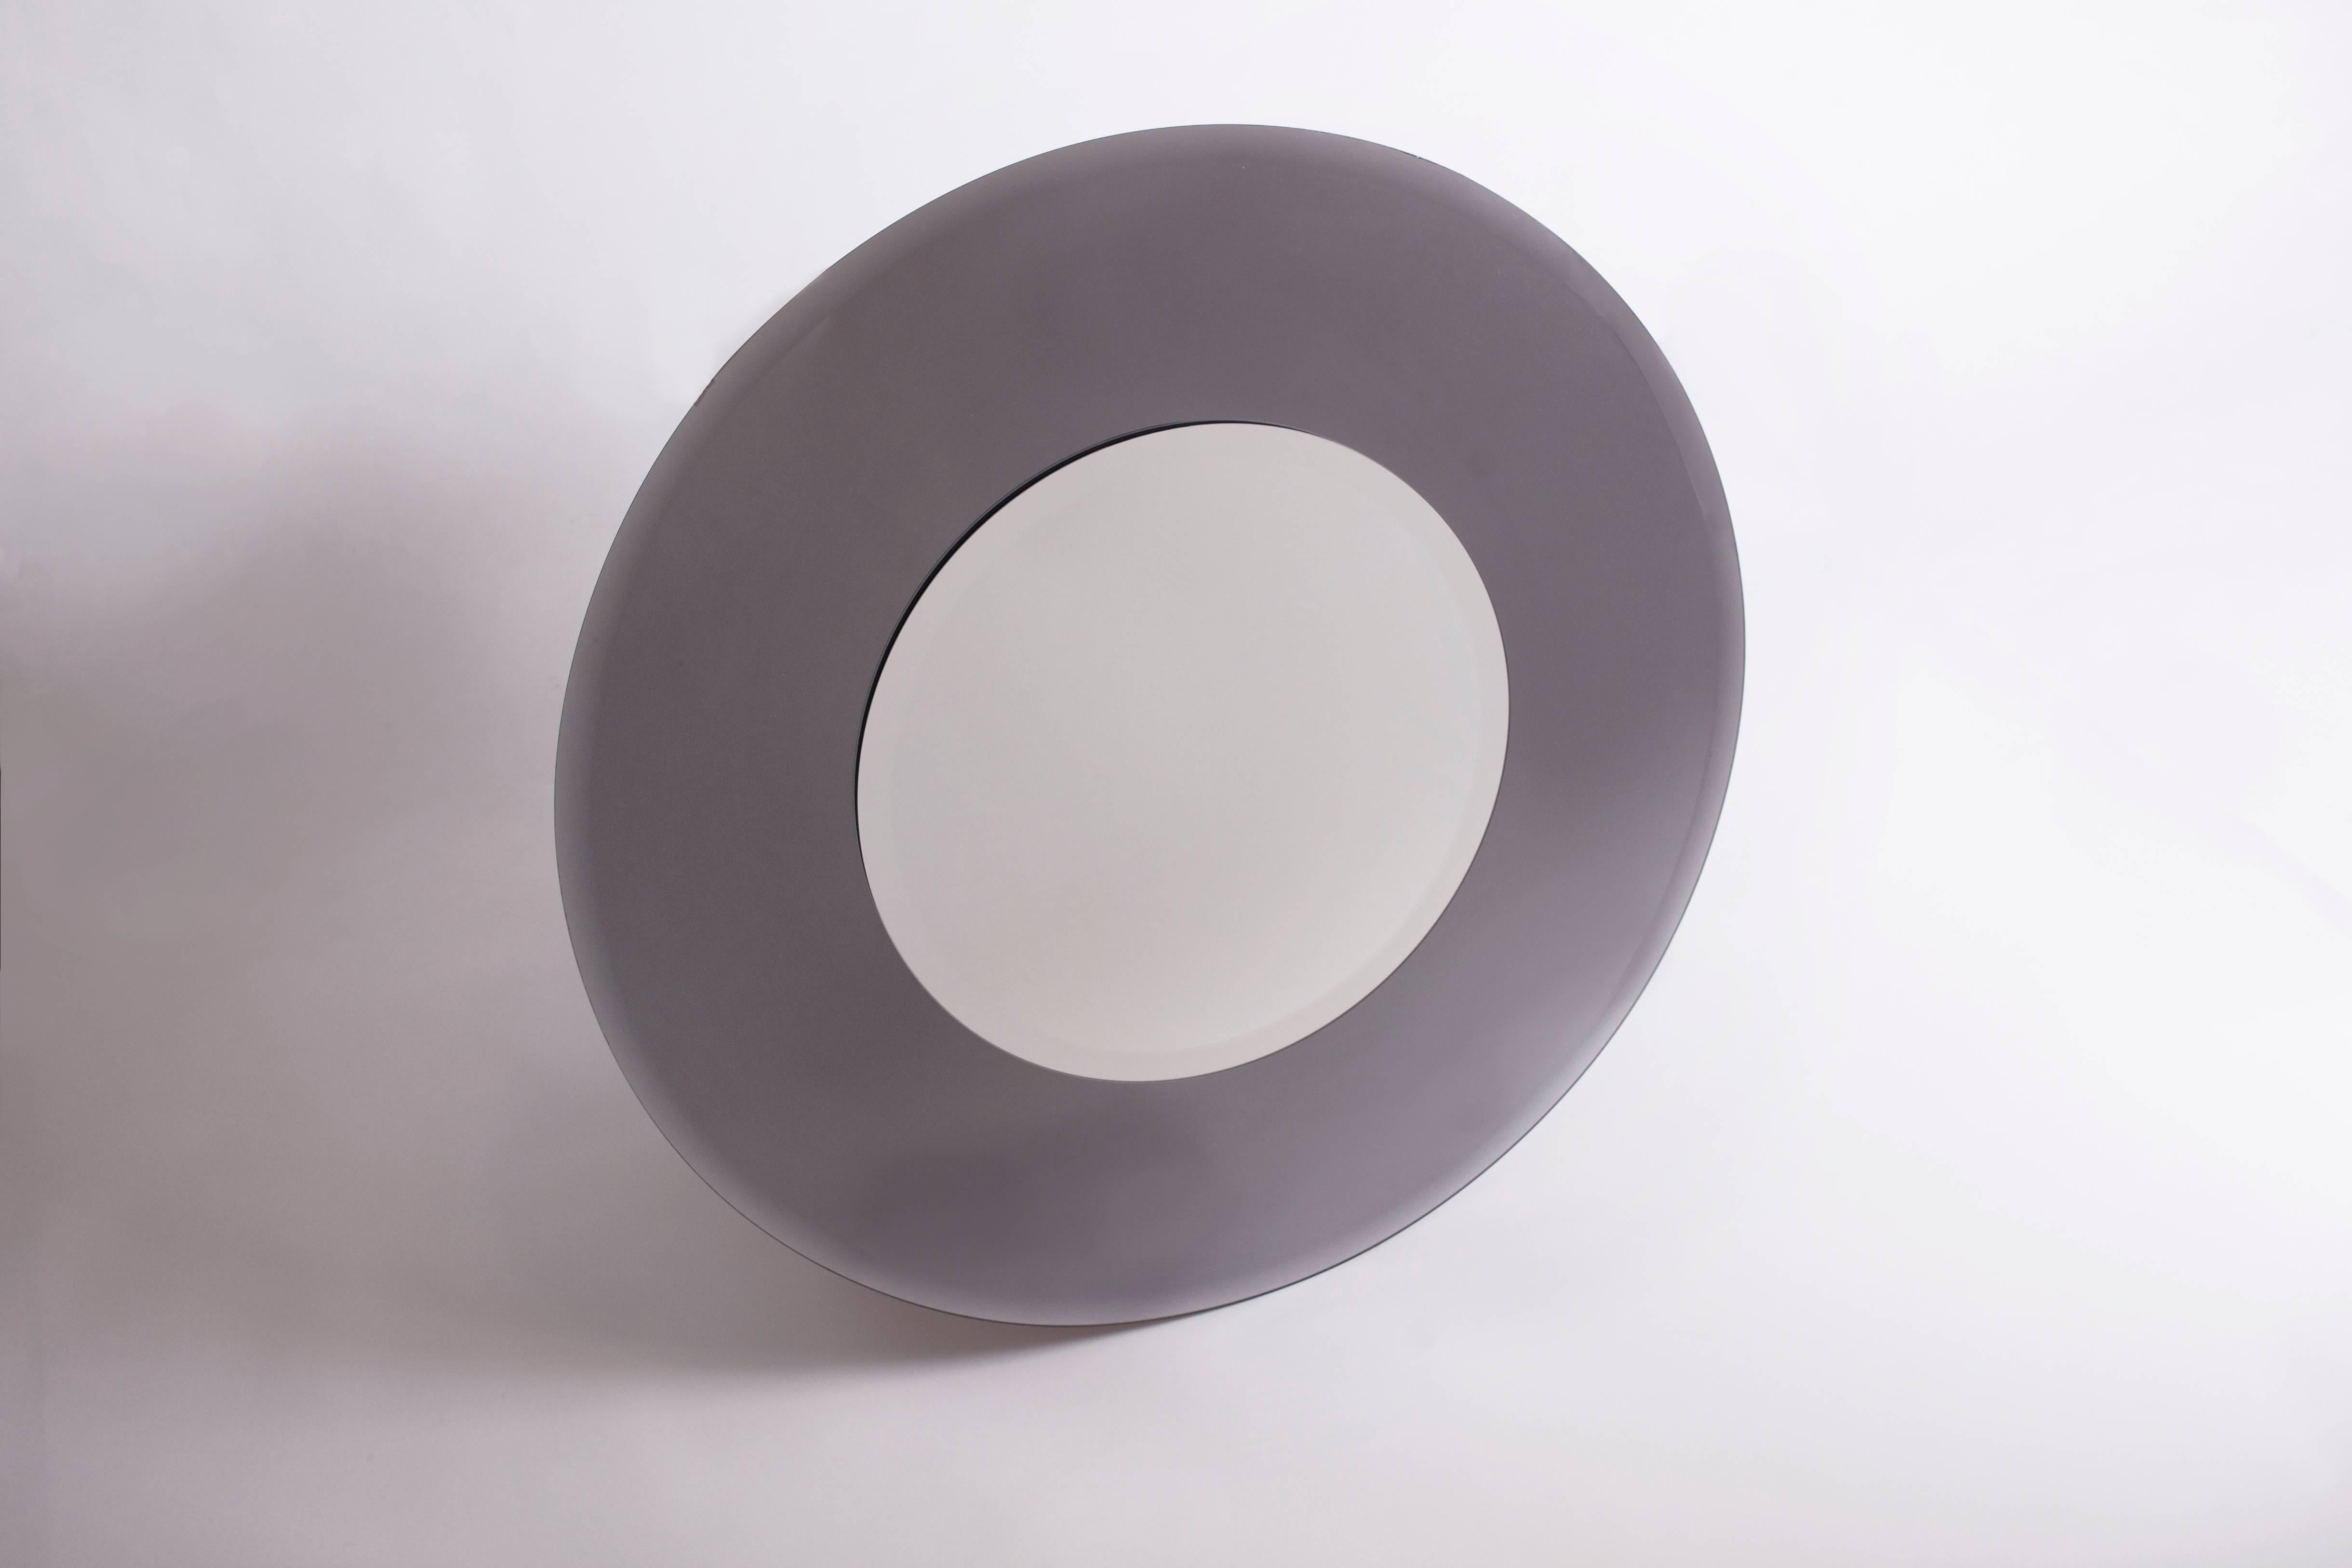 Un grand miroir circulaire bicolore italien des années 1970 avec un cadre biseauté inhabituellement profond en verre fumé gris, dans le style de Max Ingrand pour Fontana Arte. 
Excellent état, sans rayures ni éclats.
Mesures : 36'' Ø x 1'' D.